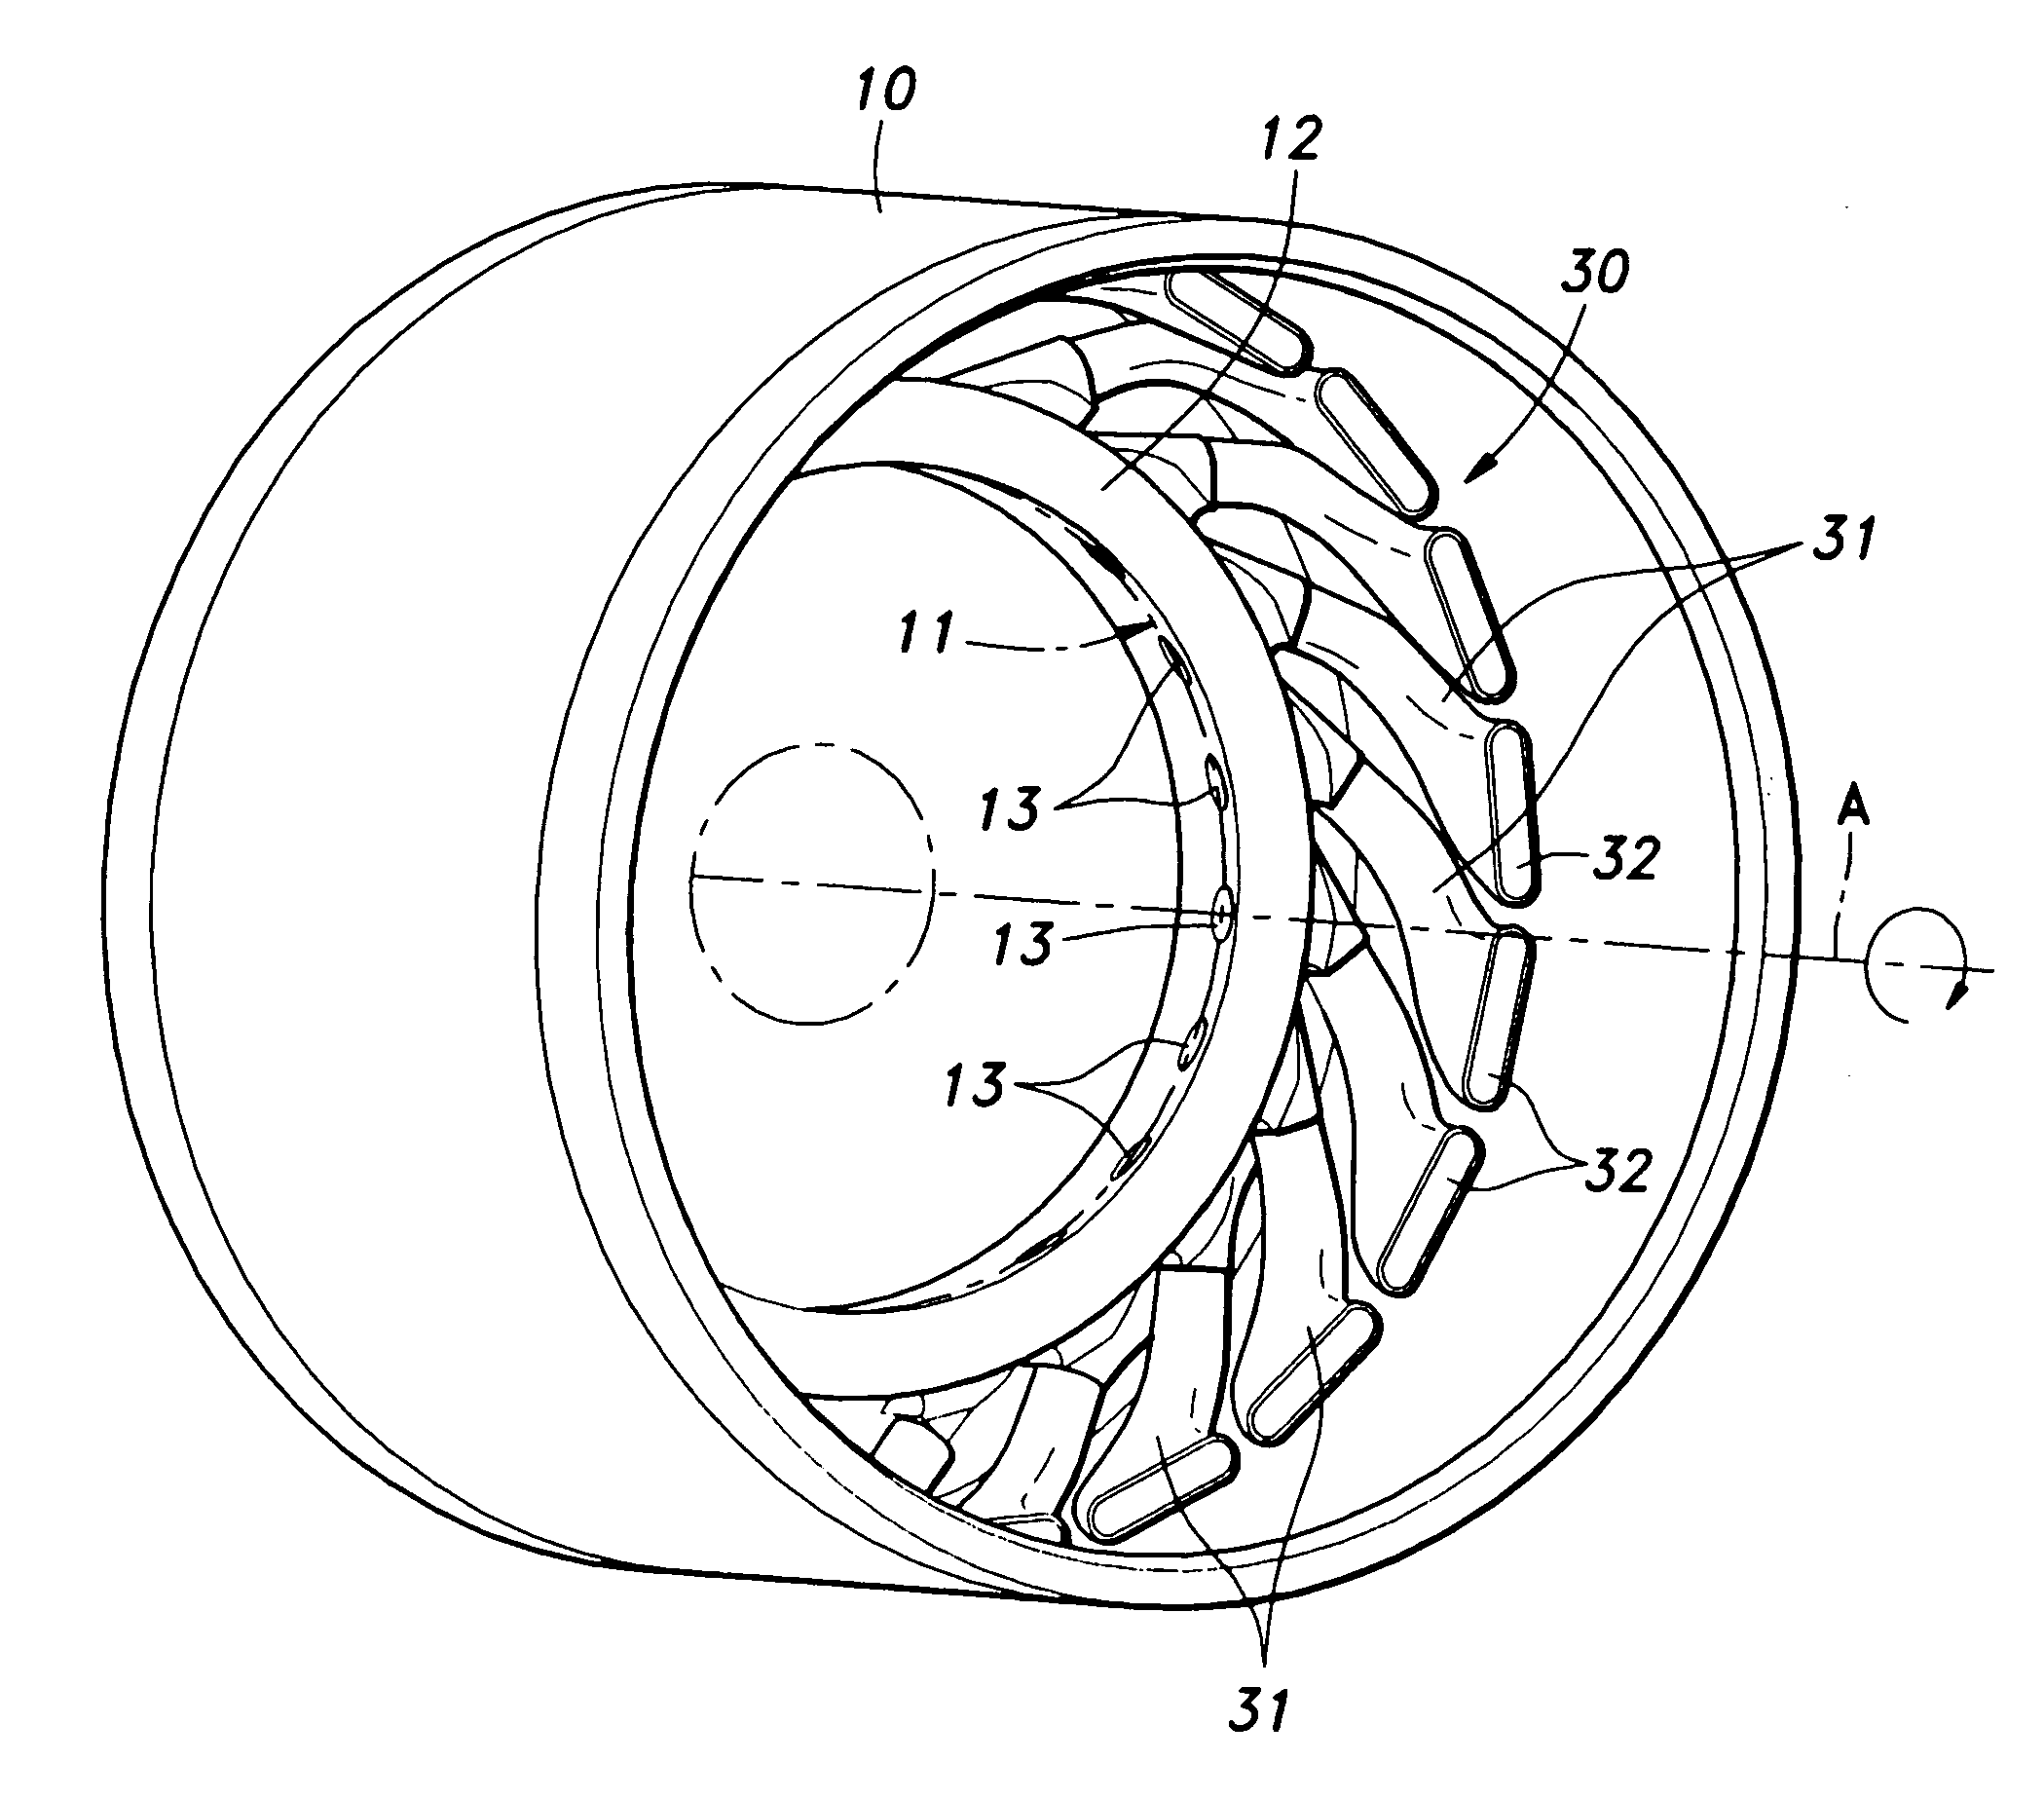 Axial diffuser for a centrifugal compressor